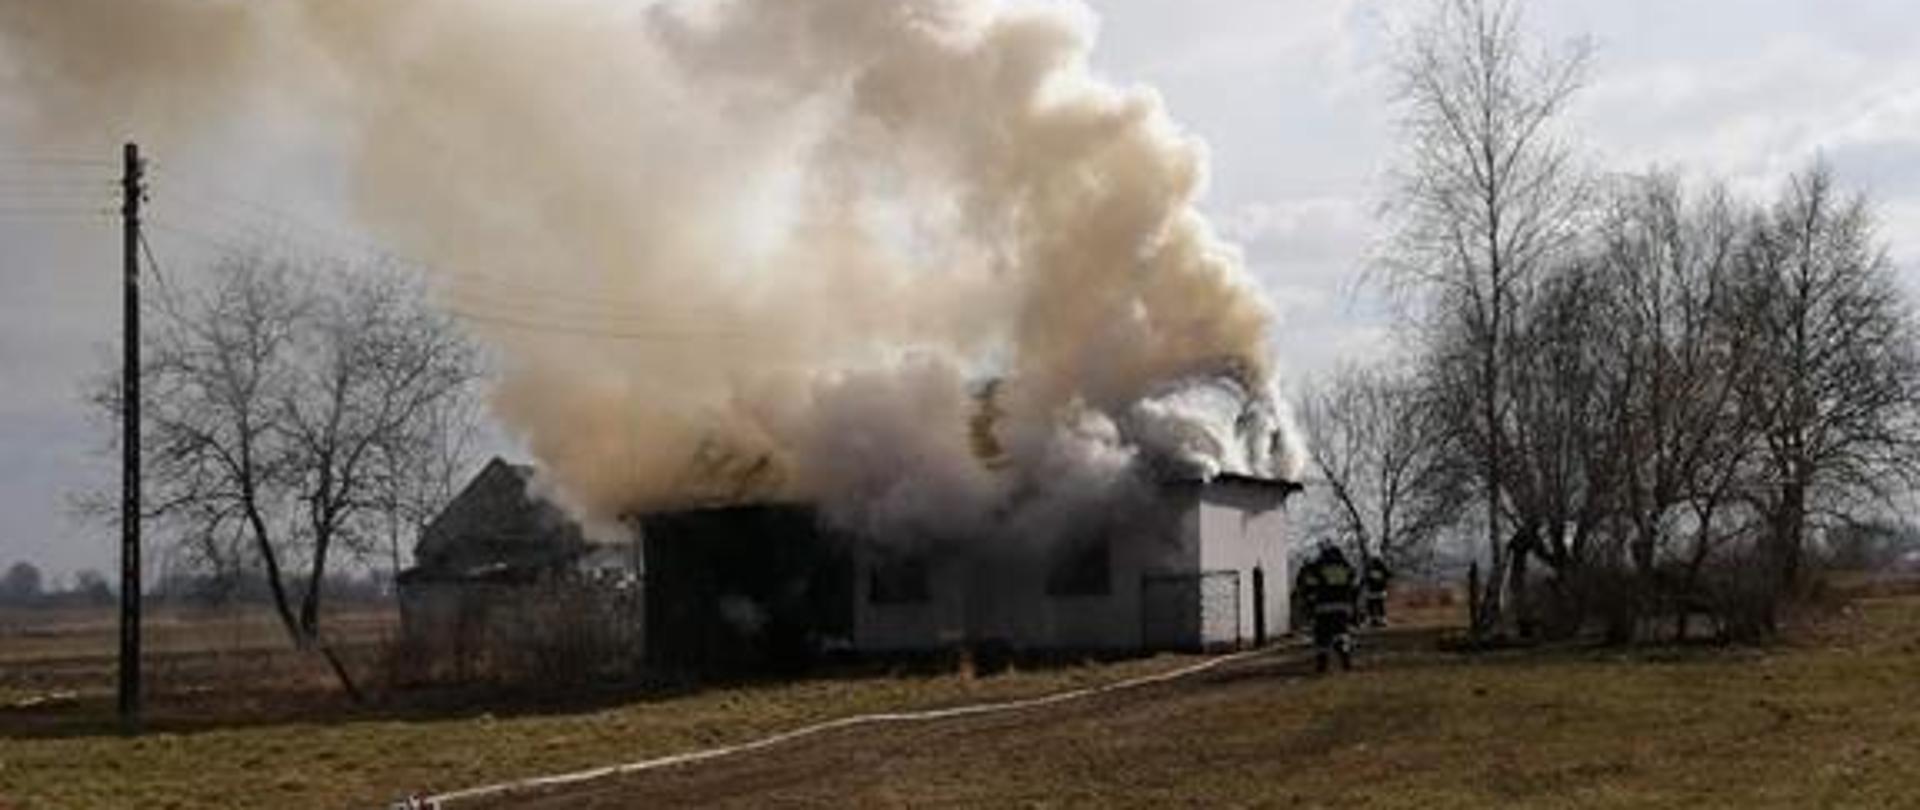 Pożar budynku mieszkalnego, strażacy rozwijają linię gaśniczą w kierunku pożaru, prowadzą działania gaśnicze.